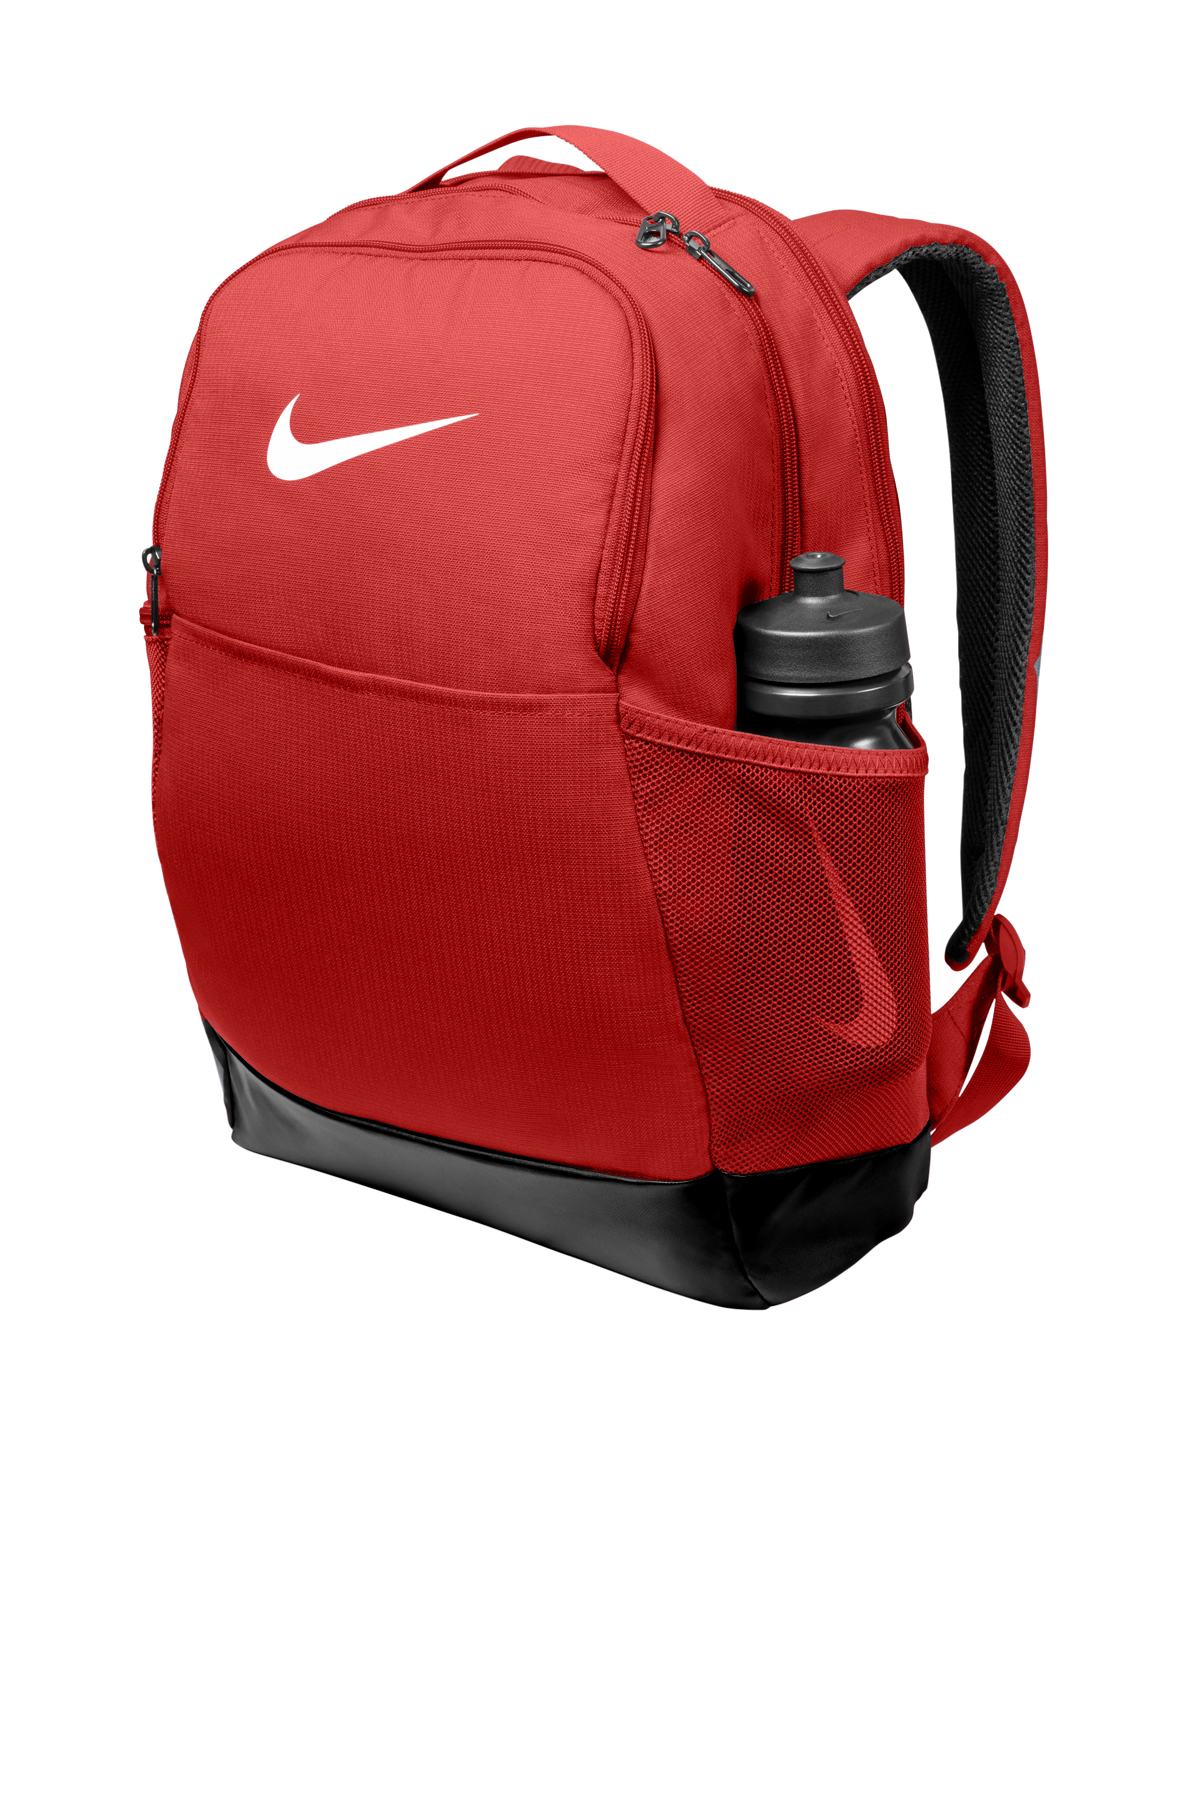 Nike Brasilia Medium Backpack, Product